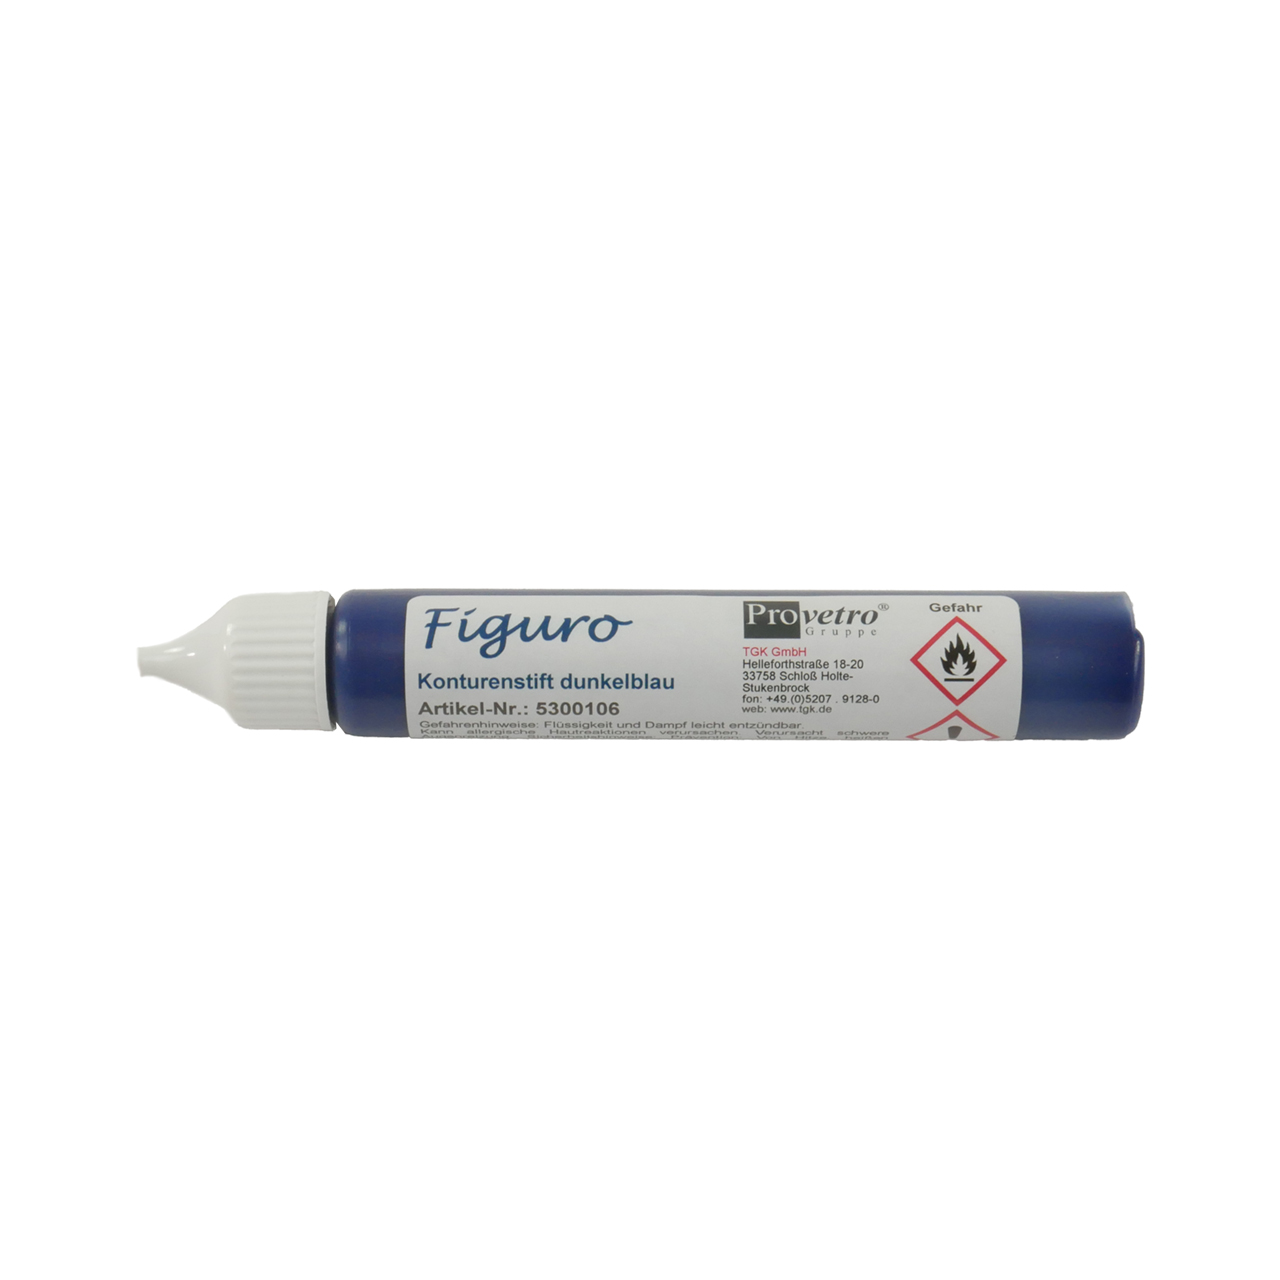 FIGURO contour line pen dark blue